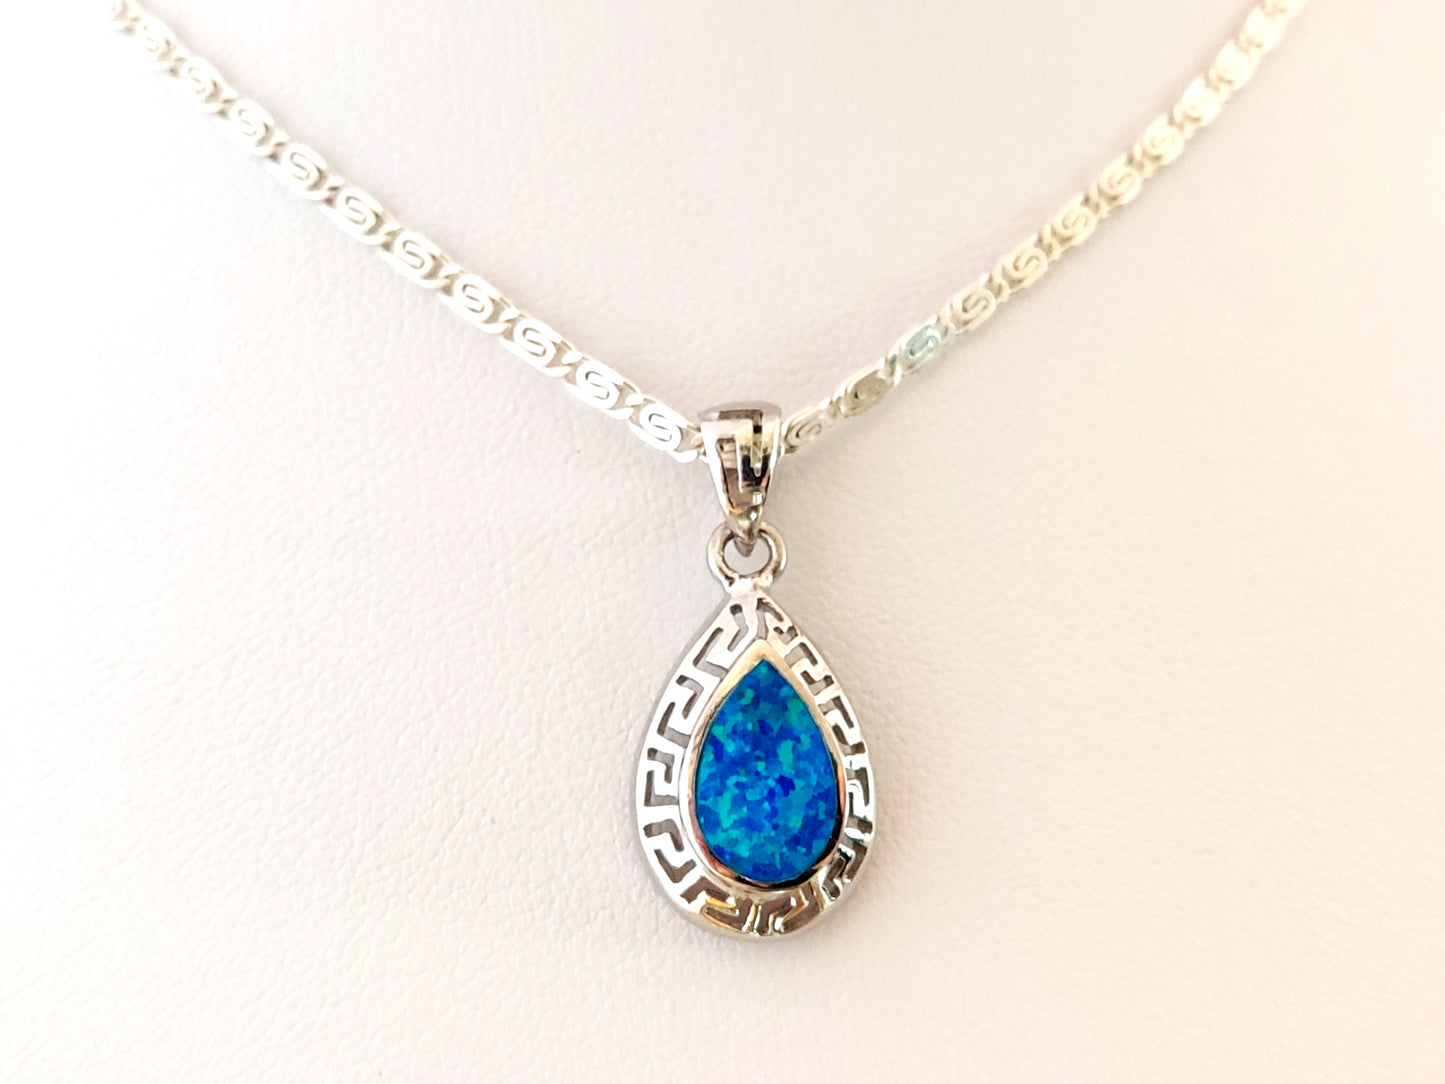 Collier en argent opale bleue avec pendentif en forme de goutte